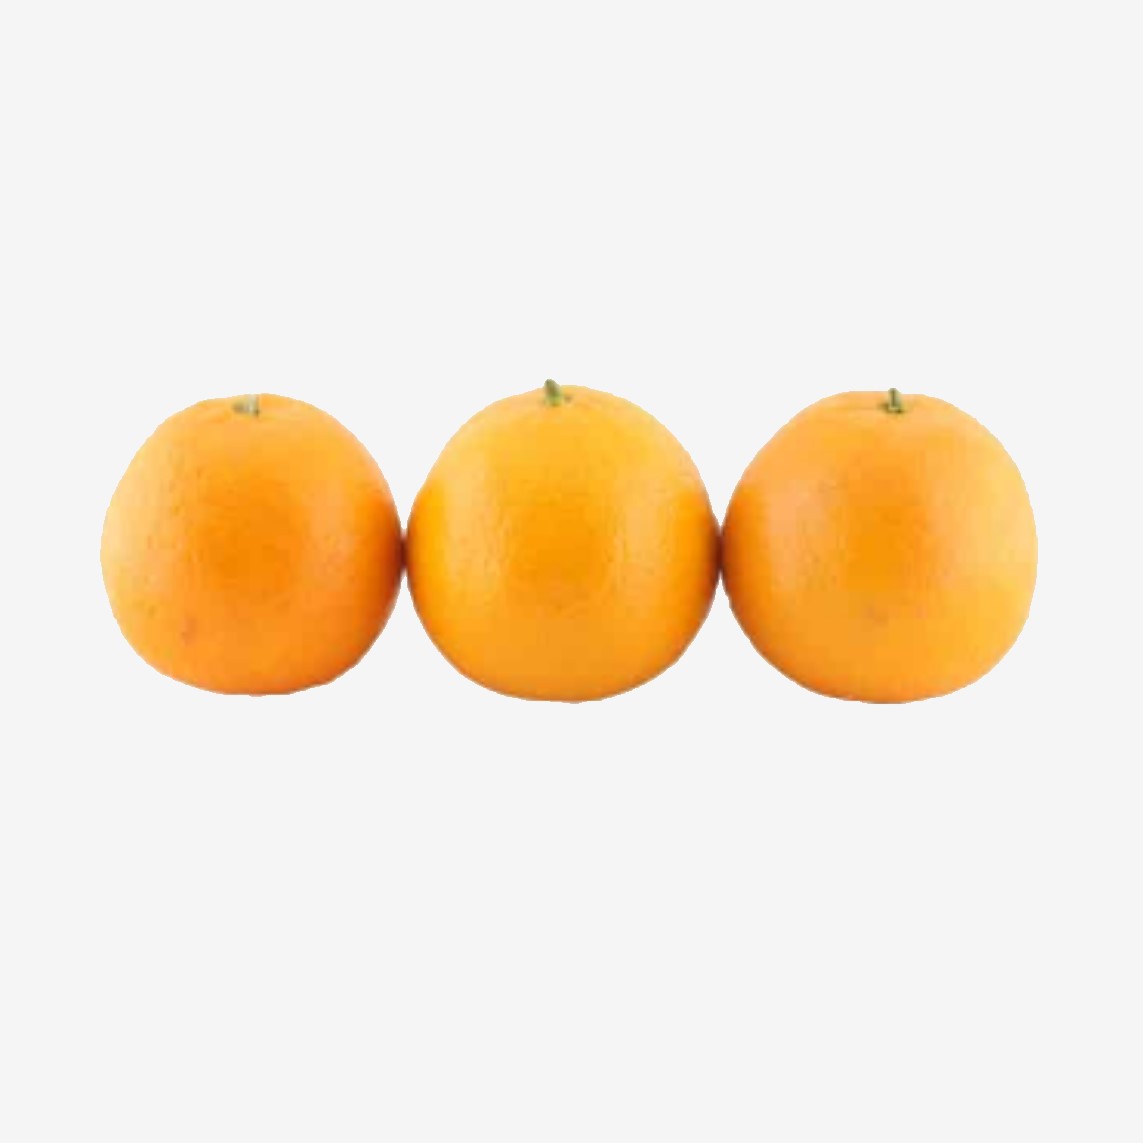 نارنگی پاکستانی عرضه شده در فروشگاه اینترنتی گل میوه